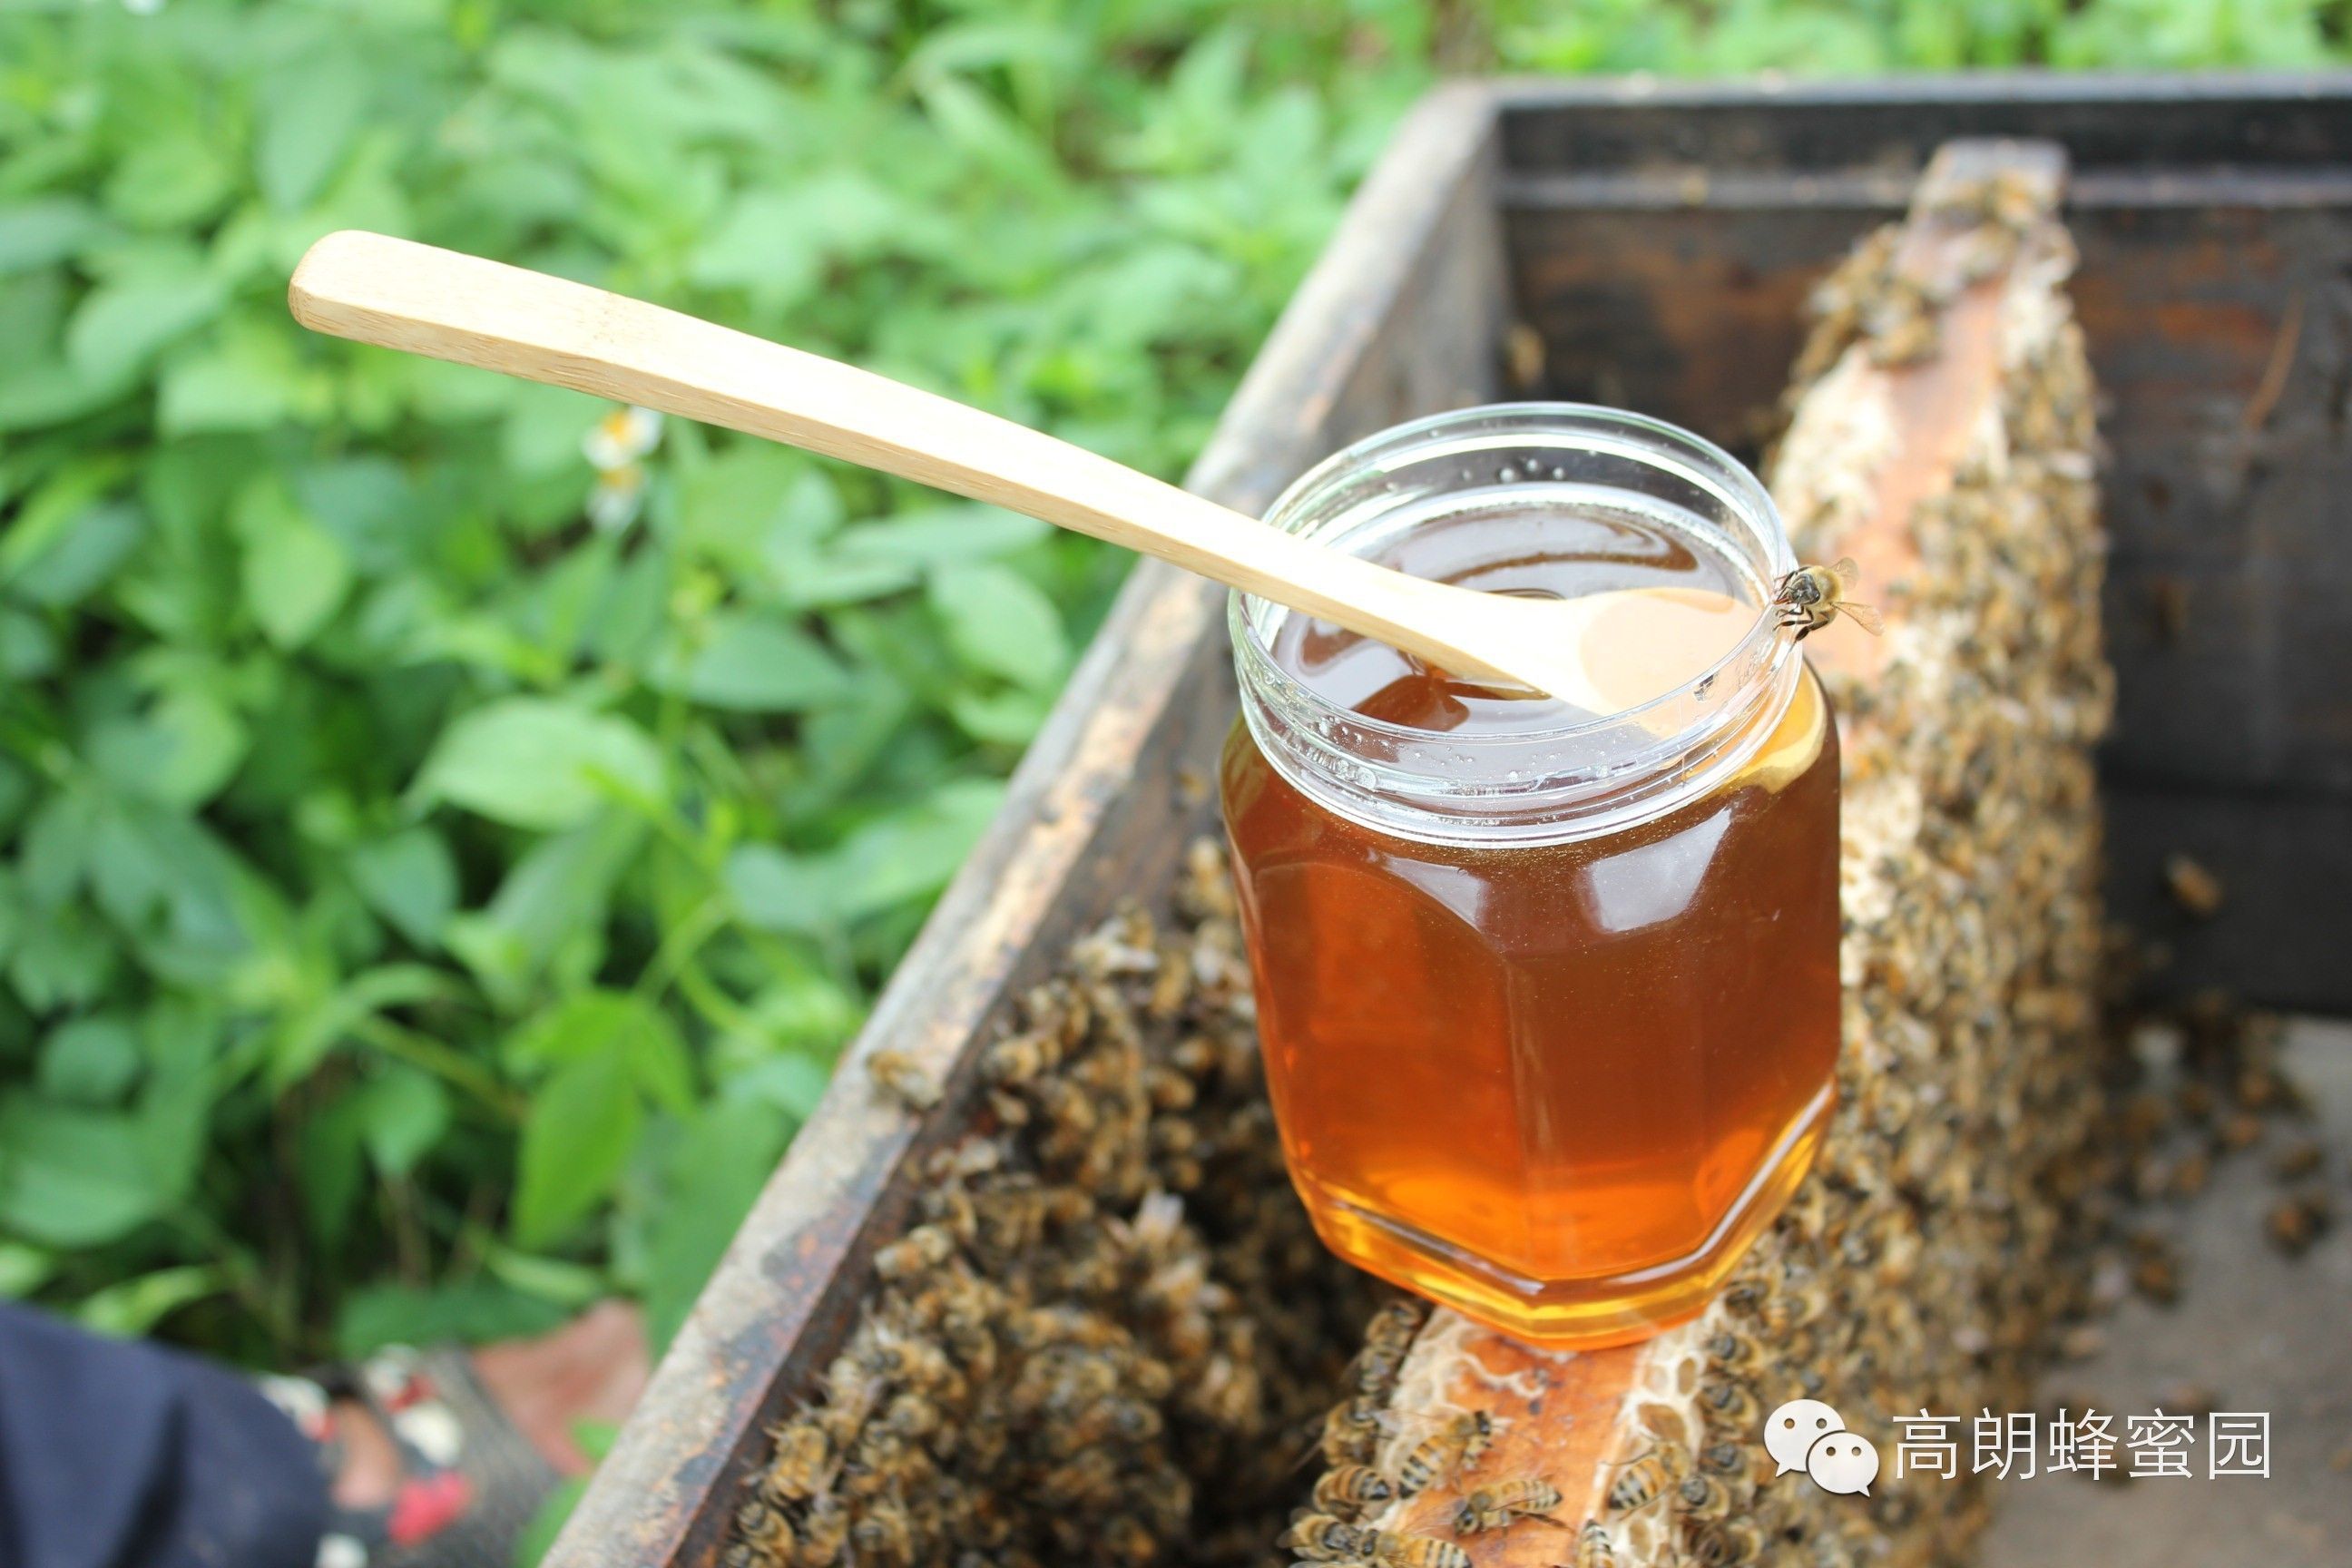 洋槐蜂蜜多少钱 什么品牌的蜂蜜好 蜂蜜水的作用与功效大揭秘 蜂蜜玫瑰 怎么辨别蜂蜜真假